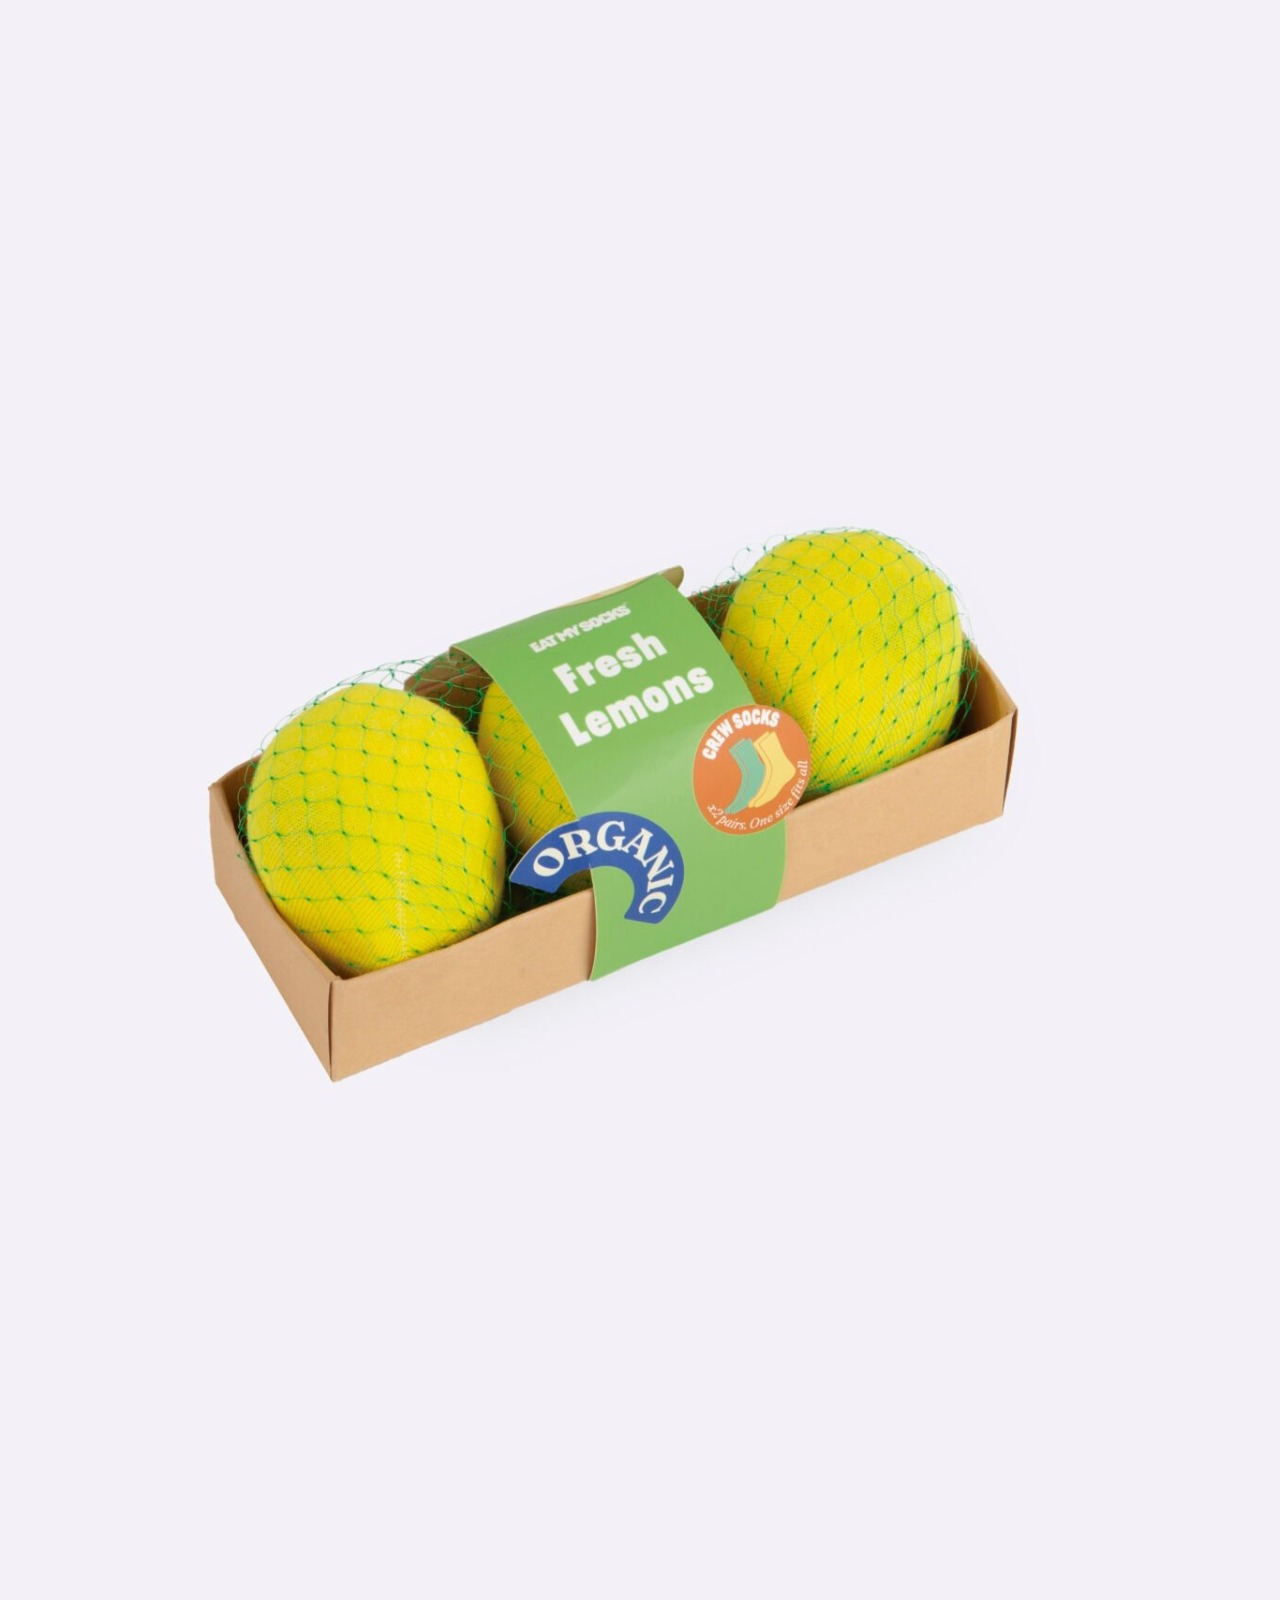 [EAT MY SOCKS] Fresh Lemons (2 pairs)